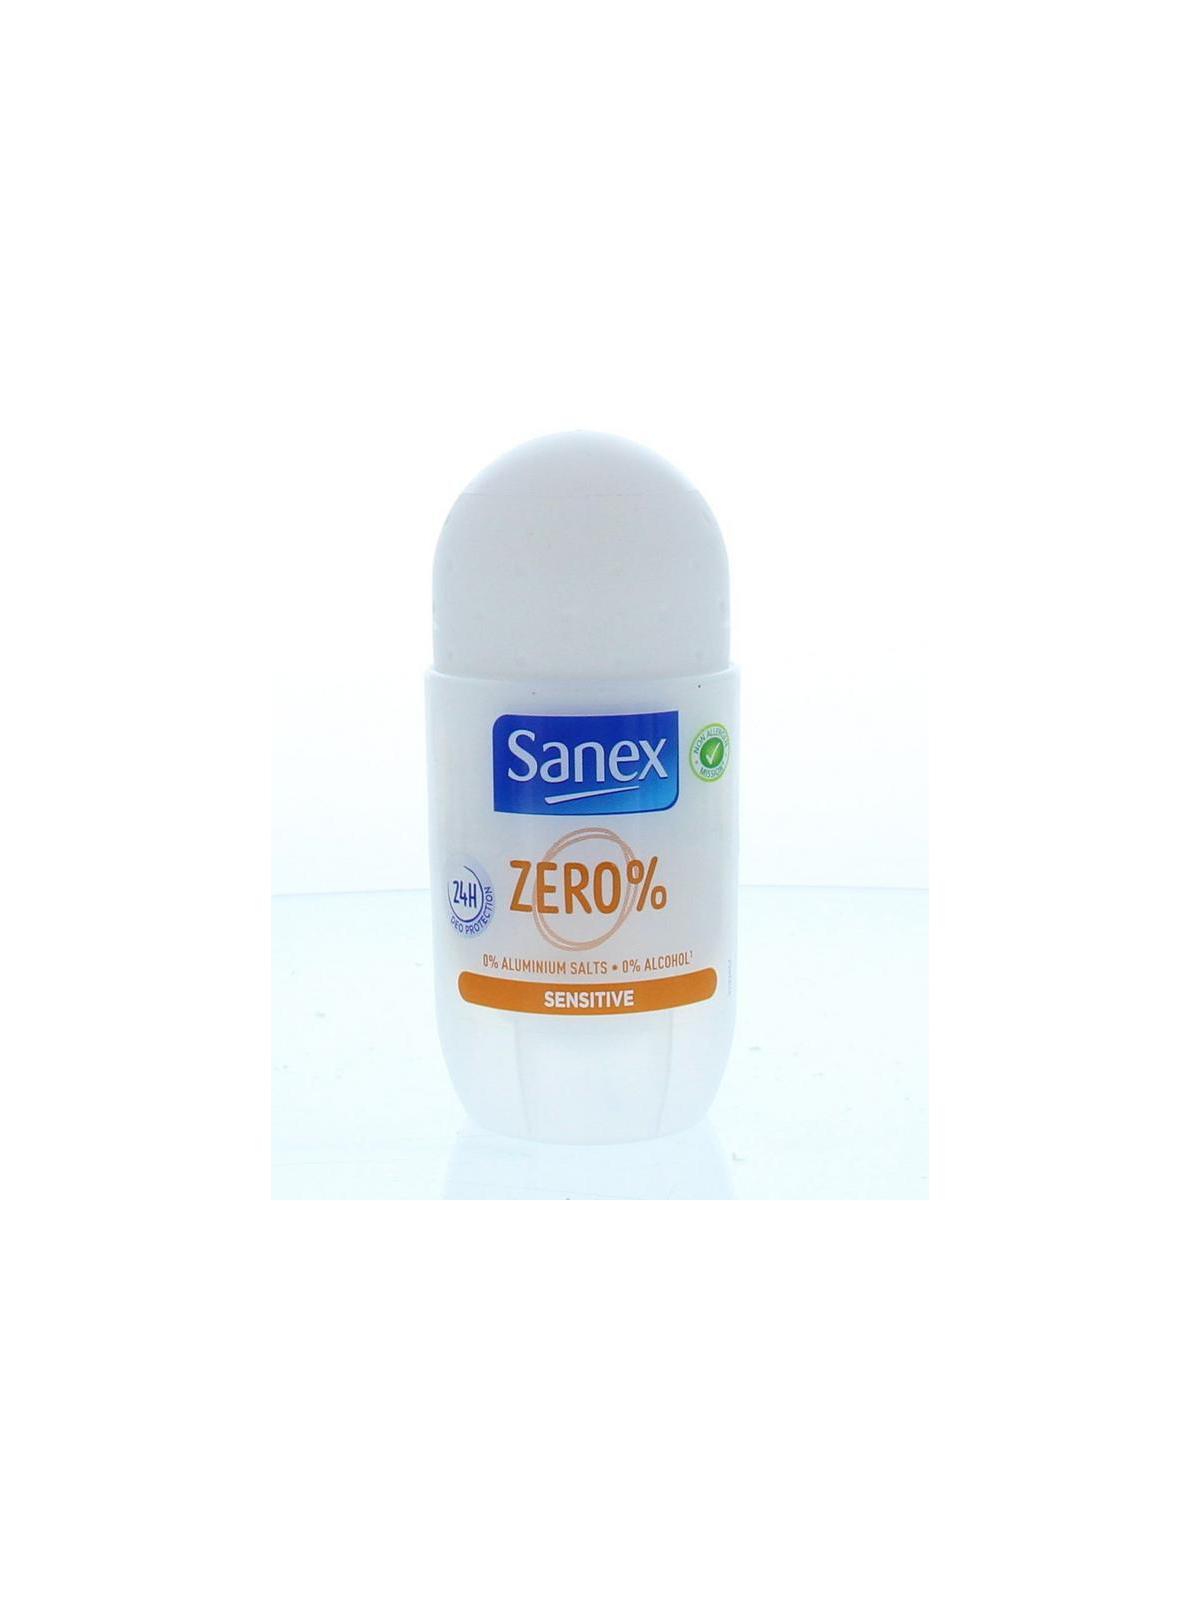 Onderscheid multifunctioneel Belang Sanex Deodorant roll-on zero% sensitive